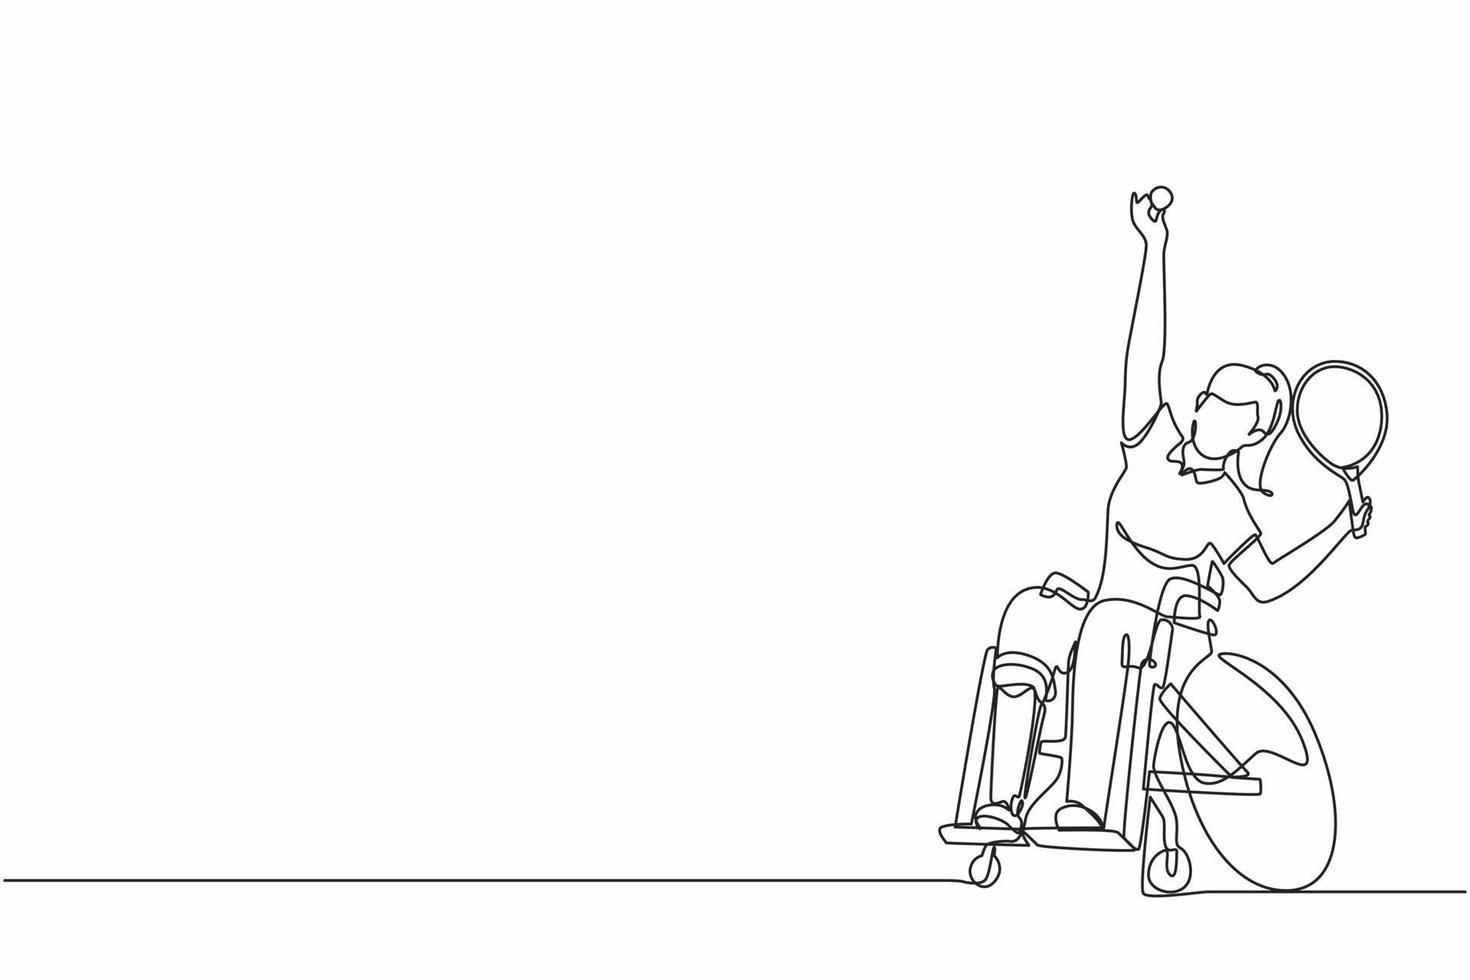 deporte de tenis en silla de ruedas de dibujo de línea continua única. atleta en silla de ruedas con raqueta. gente activa mujer. discapacidad, política social. apoyo social. vector de diseño gráfico de dibujo de una línea